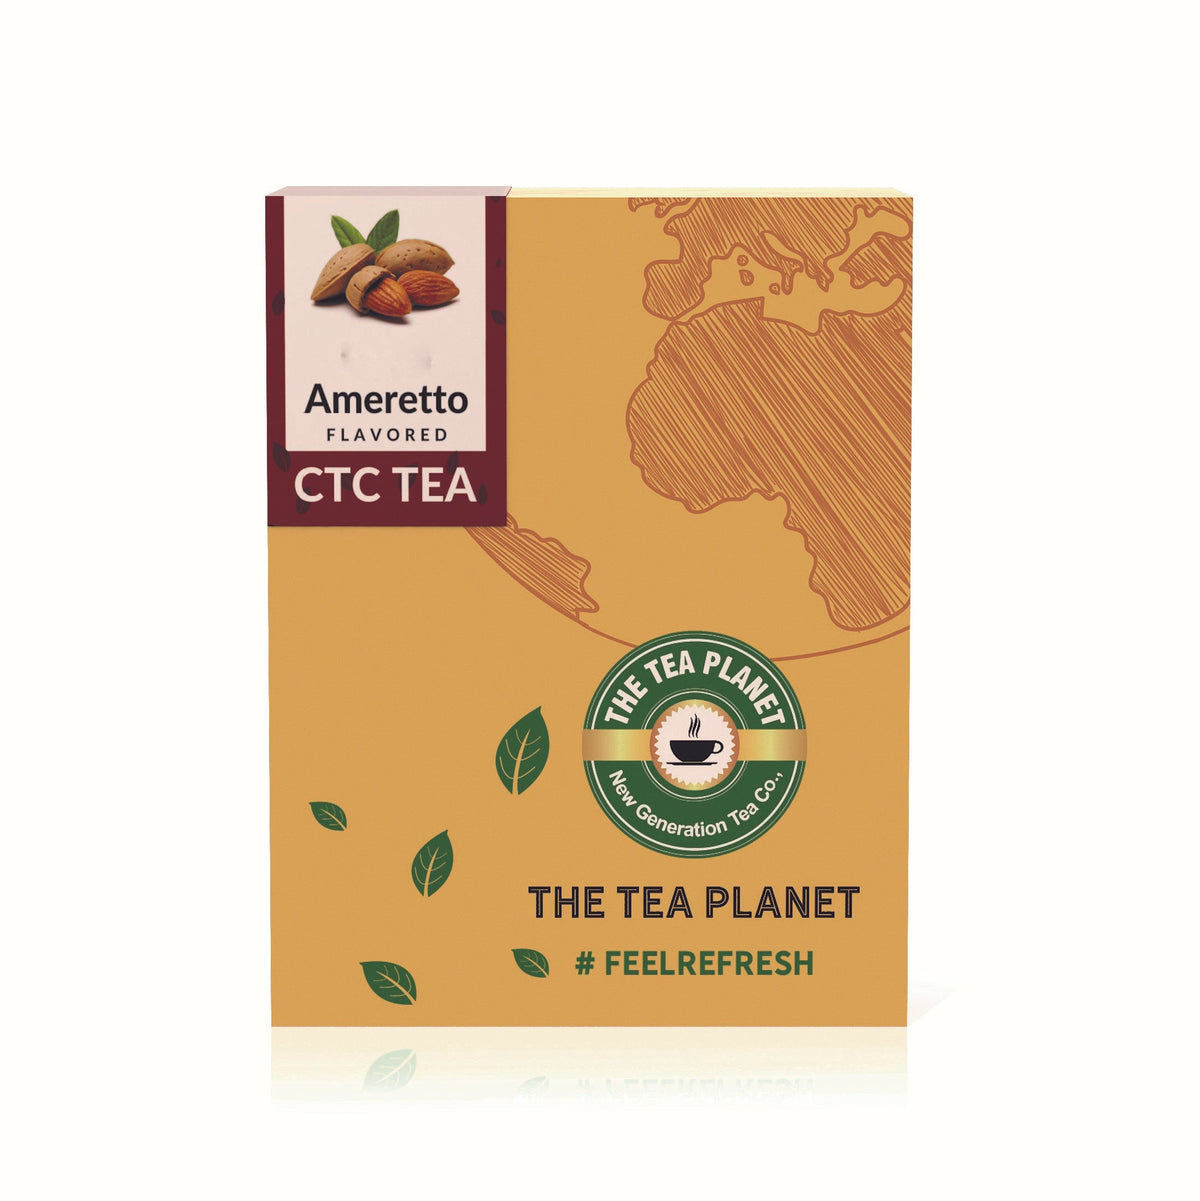 Ameretto Flavored CTC Tea 1